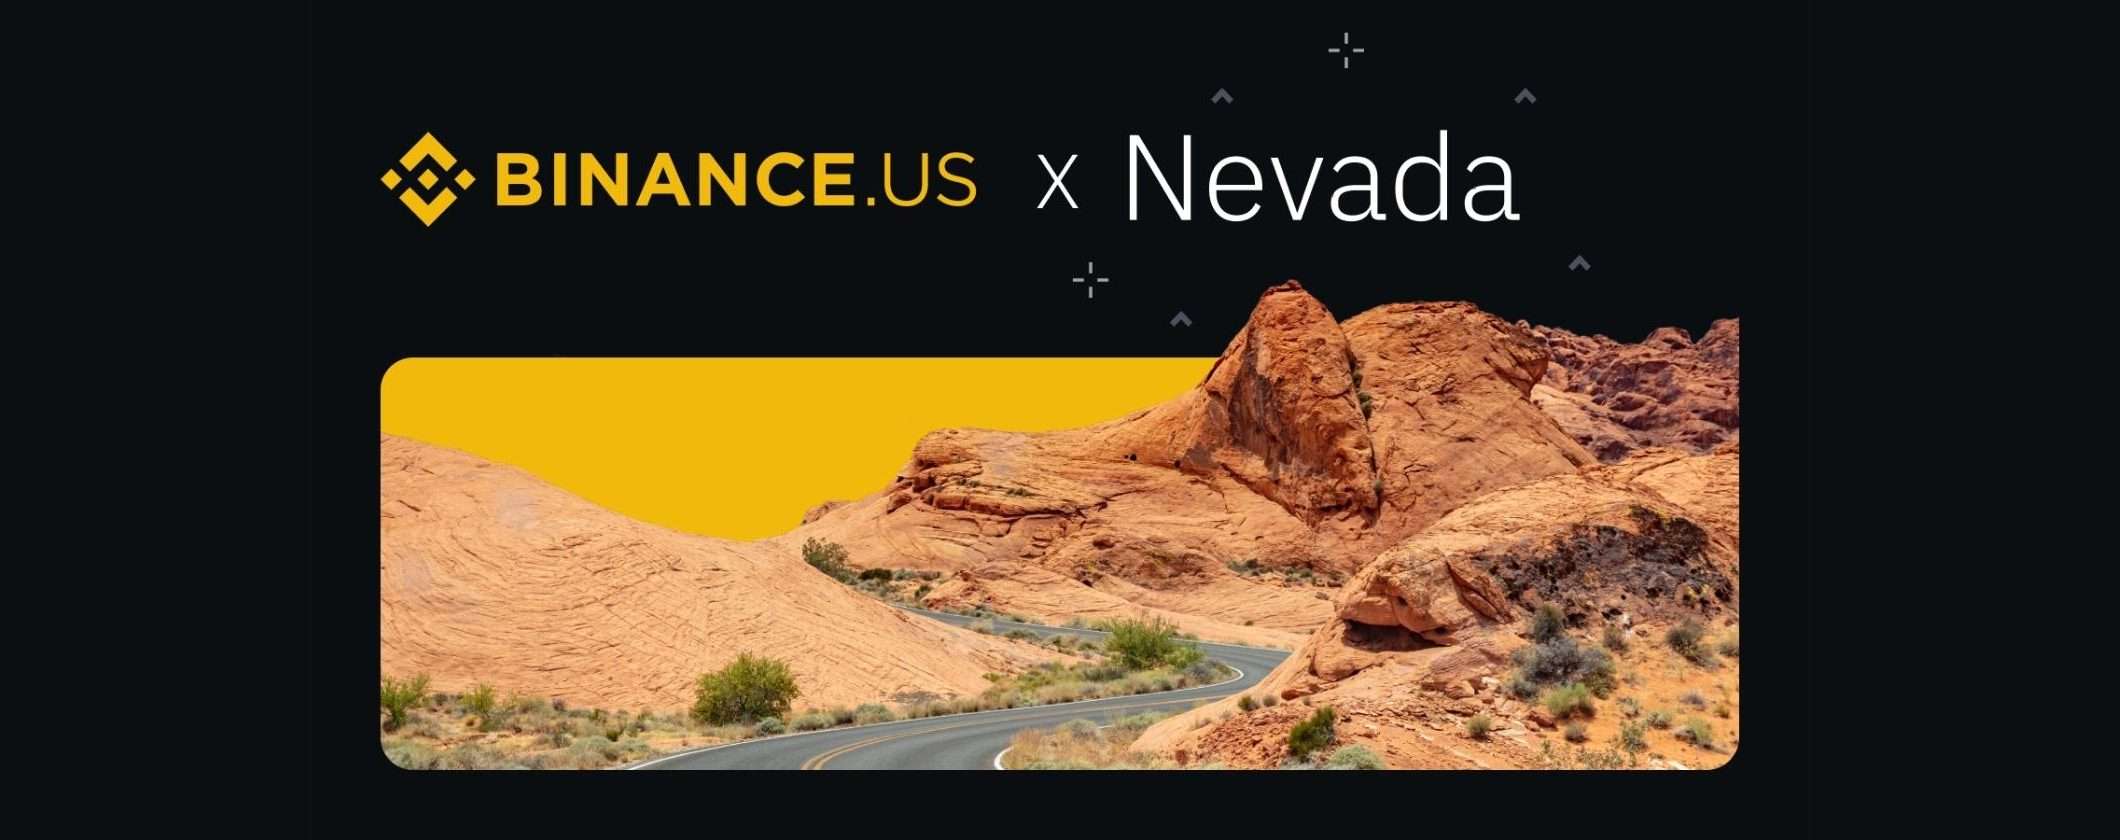 Binance approda in Nevada: ora dovresti aprire un conto sull'exchange